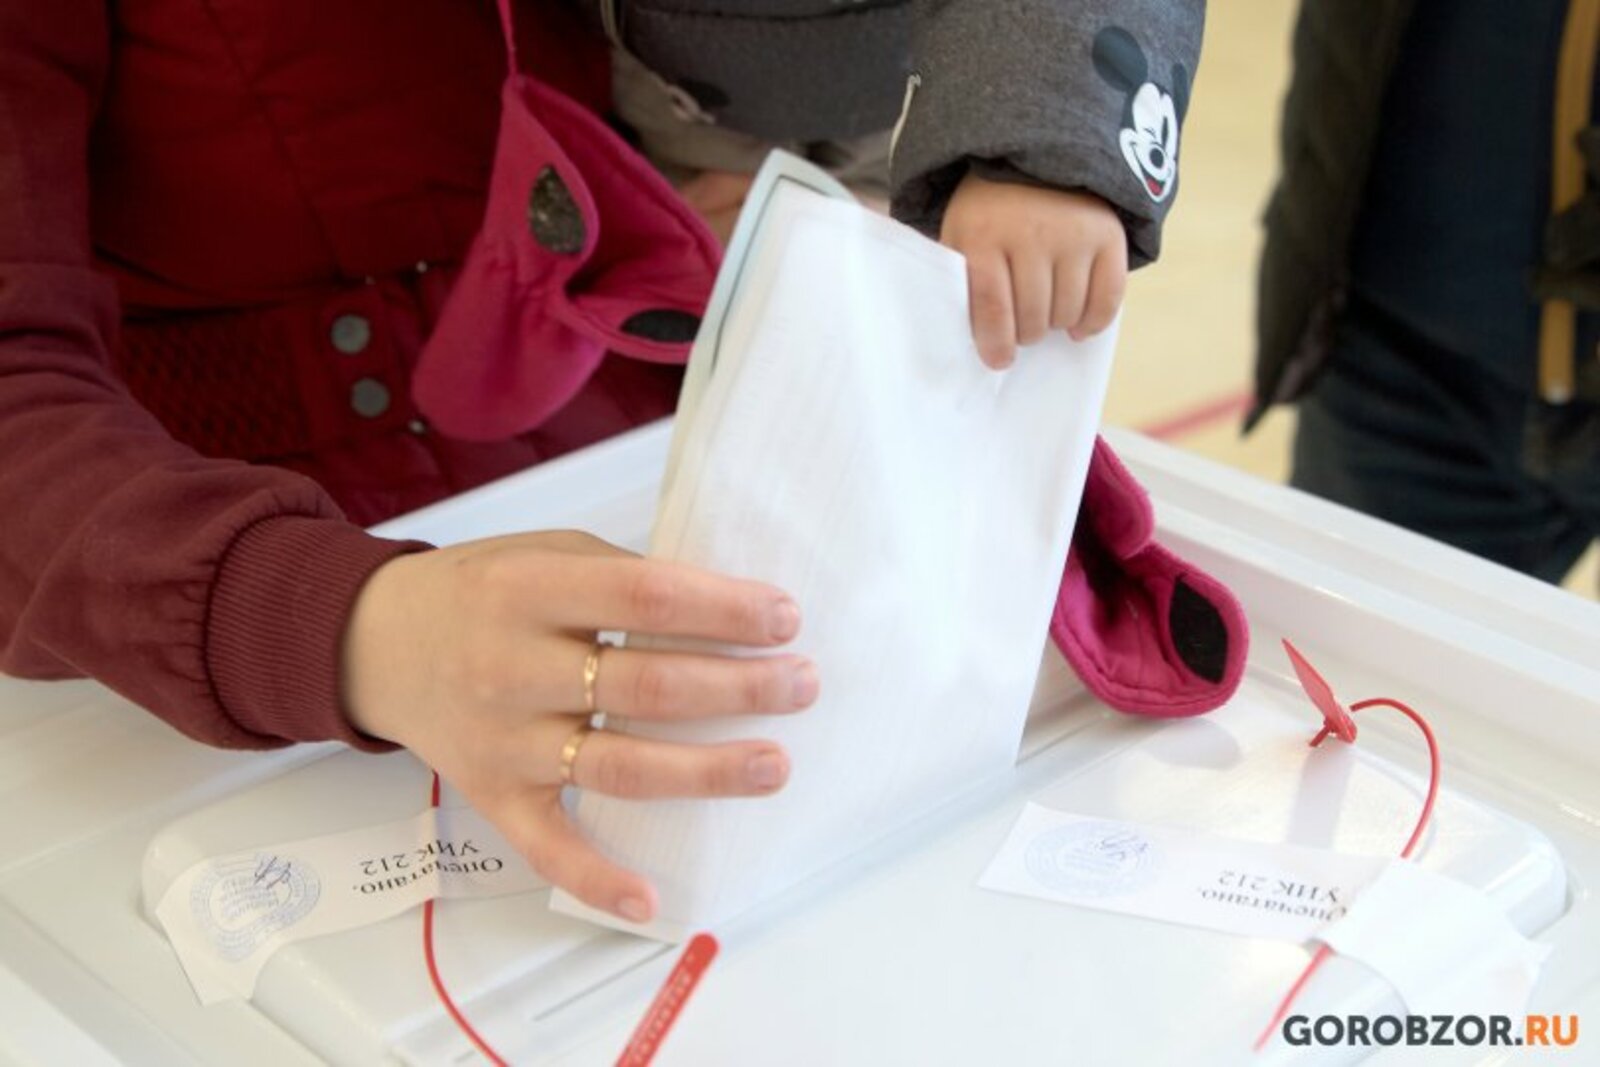 Два дня голосования в Башкирии завершены: явка на выборах президента страны 64,82%